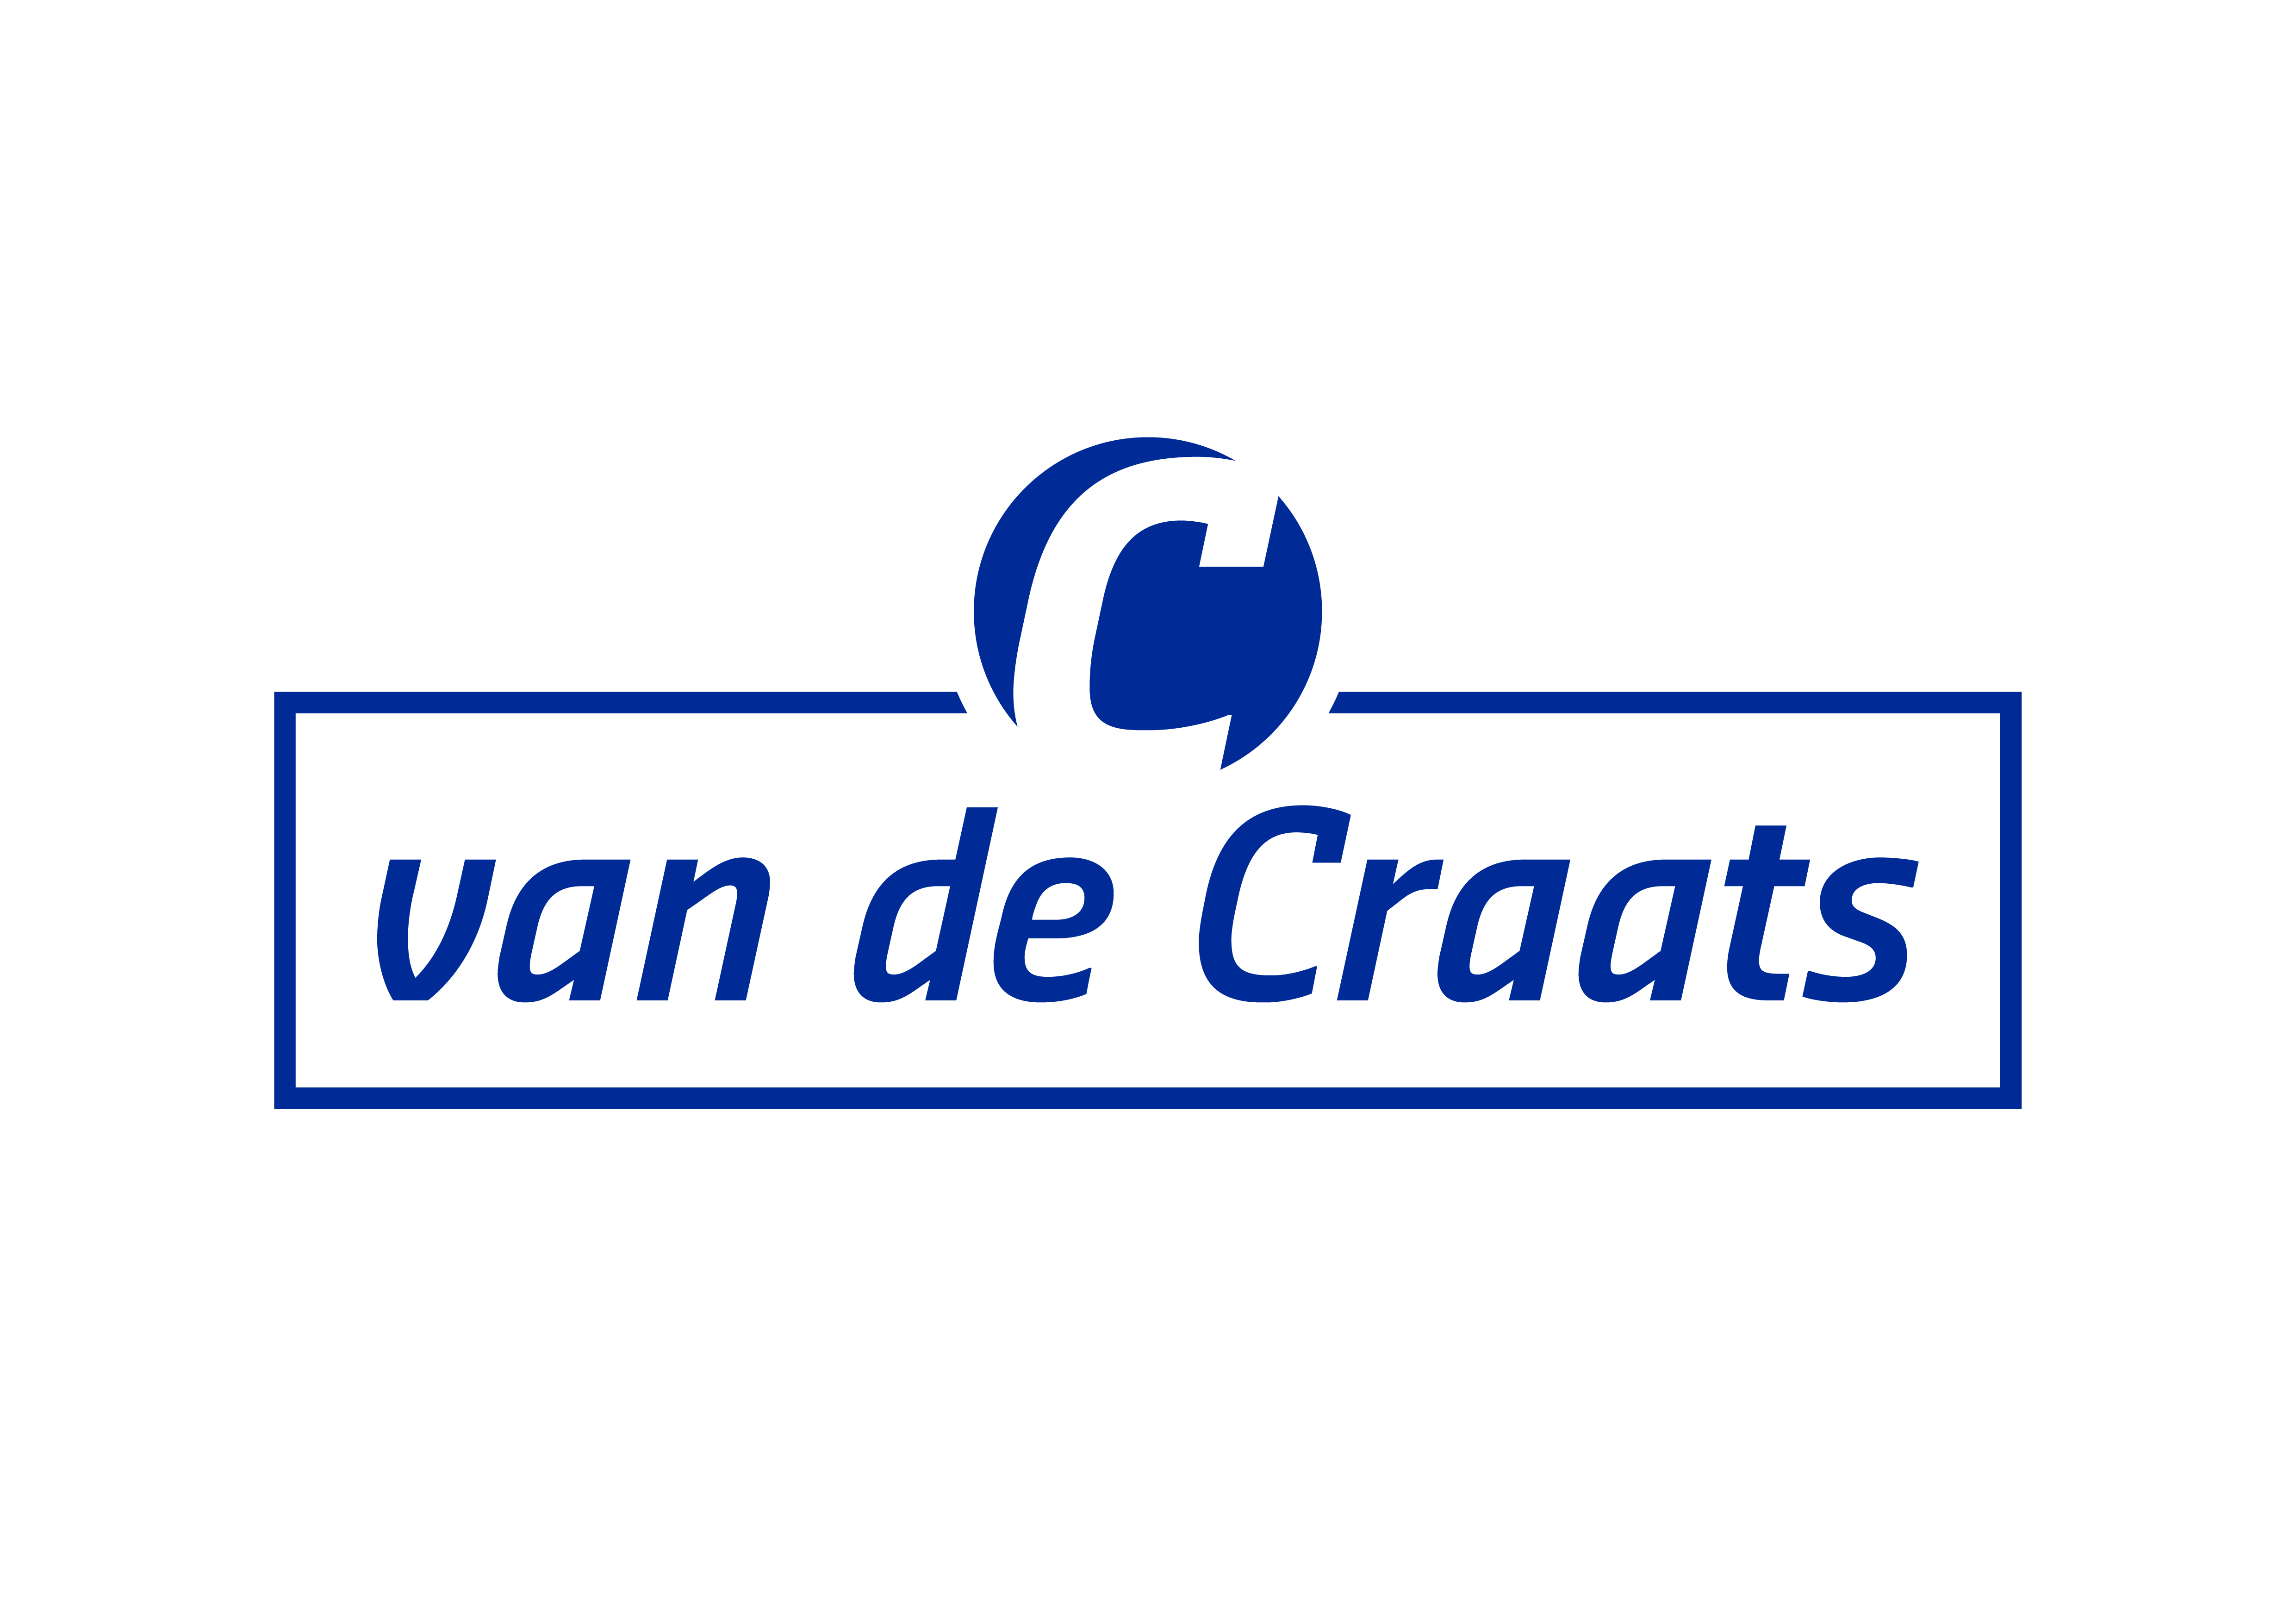 Van de Craats Logo